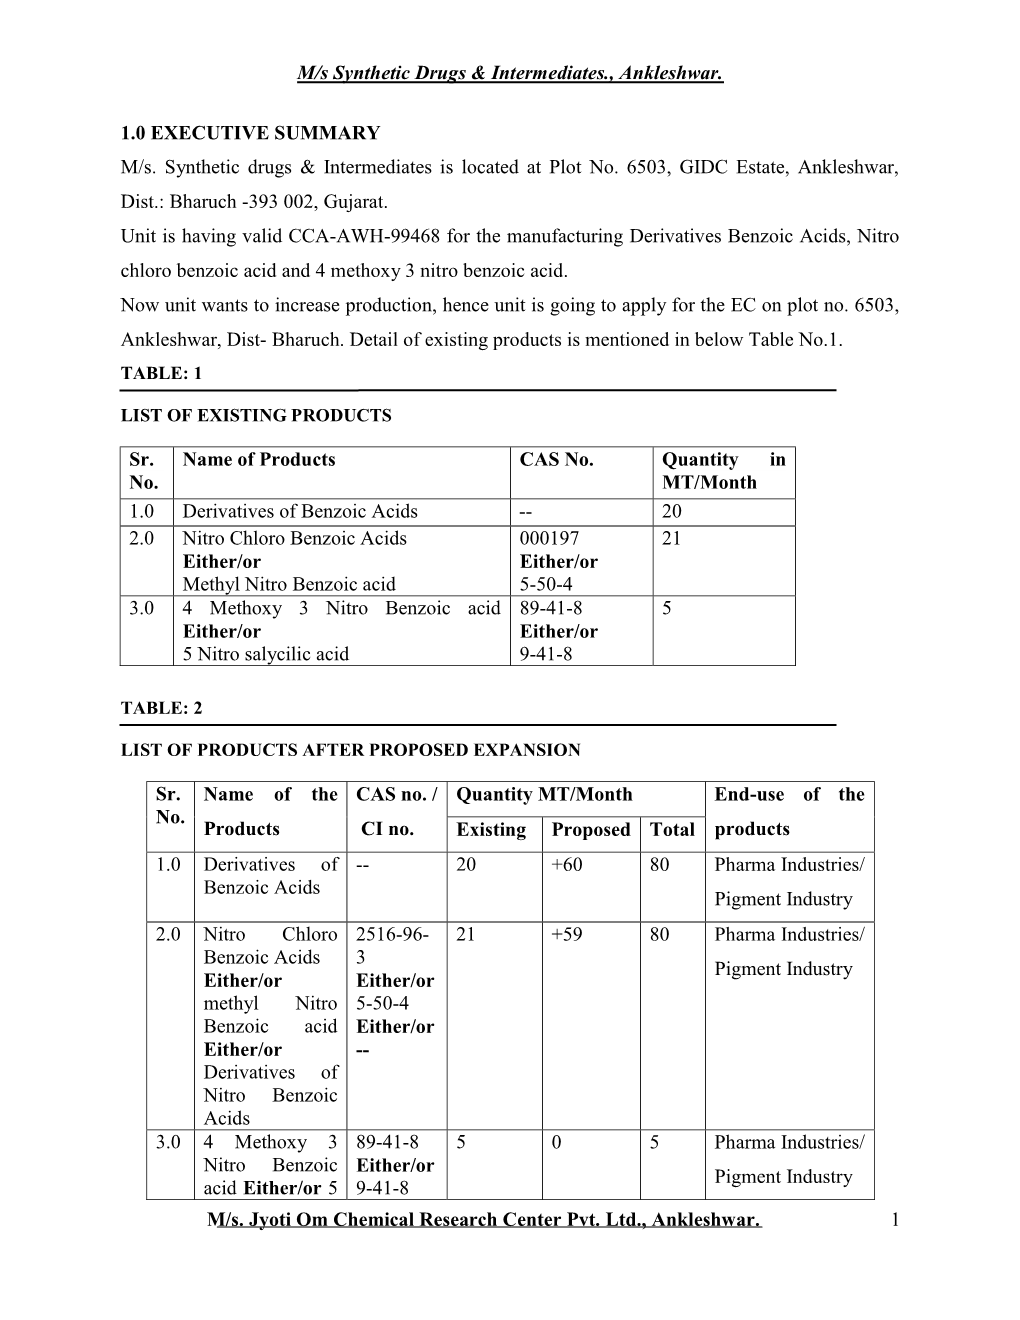 M/S Synthetic Drugs & Intermediates., Ankleshwar. M/S. Jyoti Om Chemical Research Center Pvt. Ltd., Ankleshwar. 1 1.0 EX